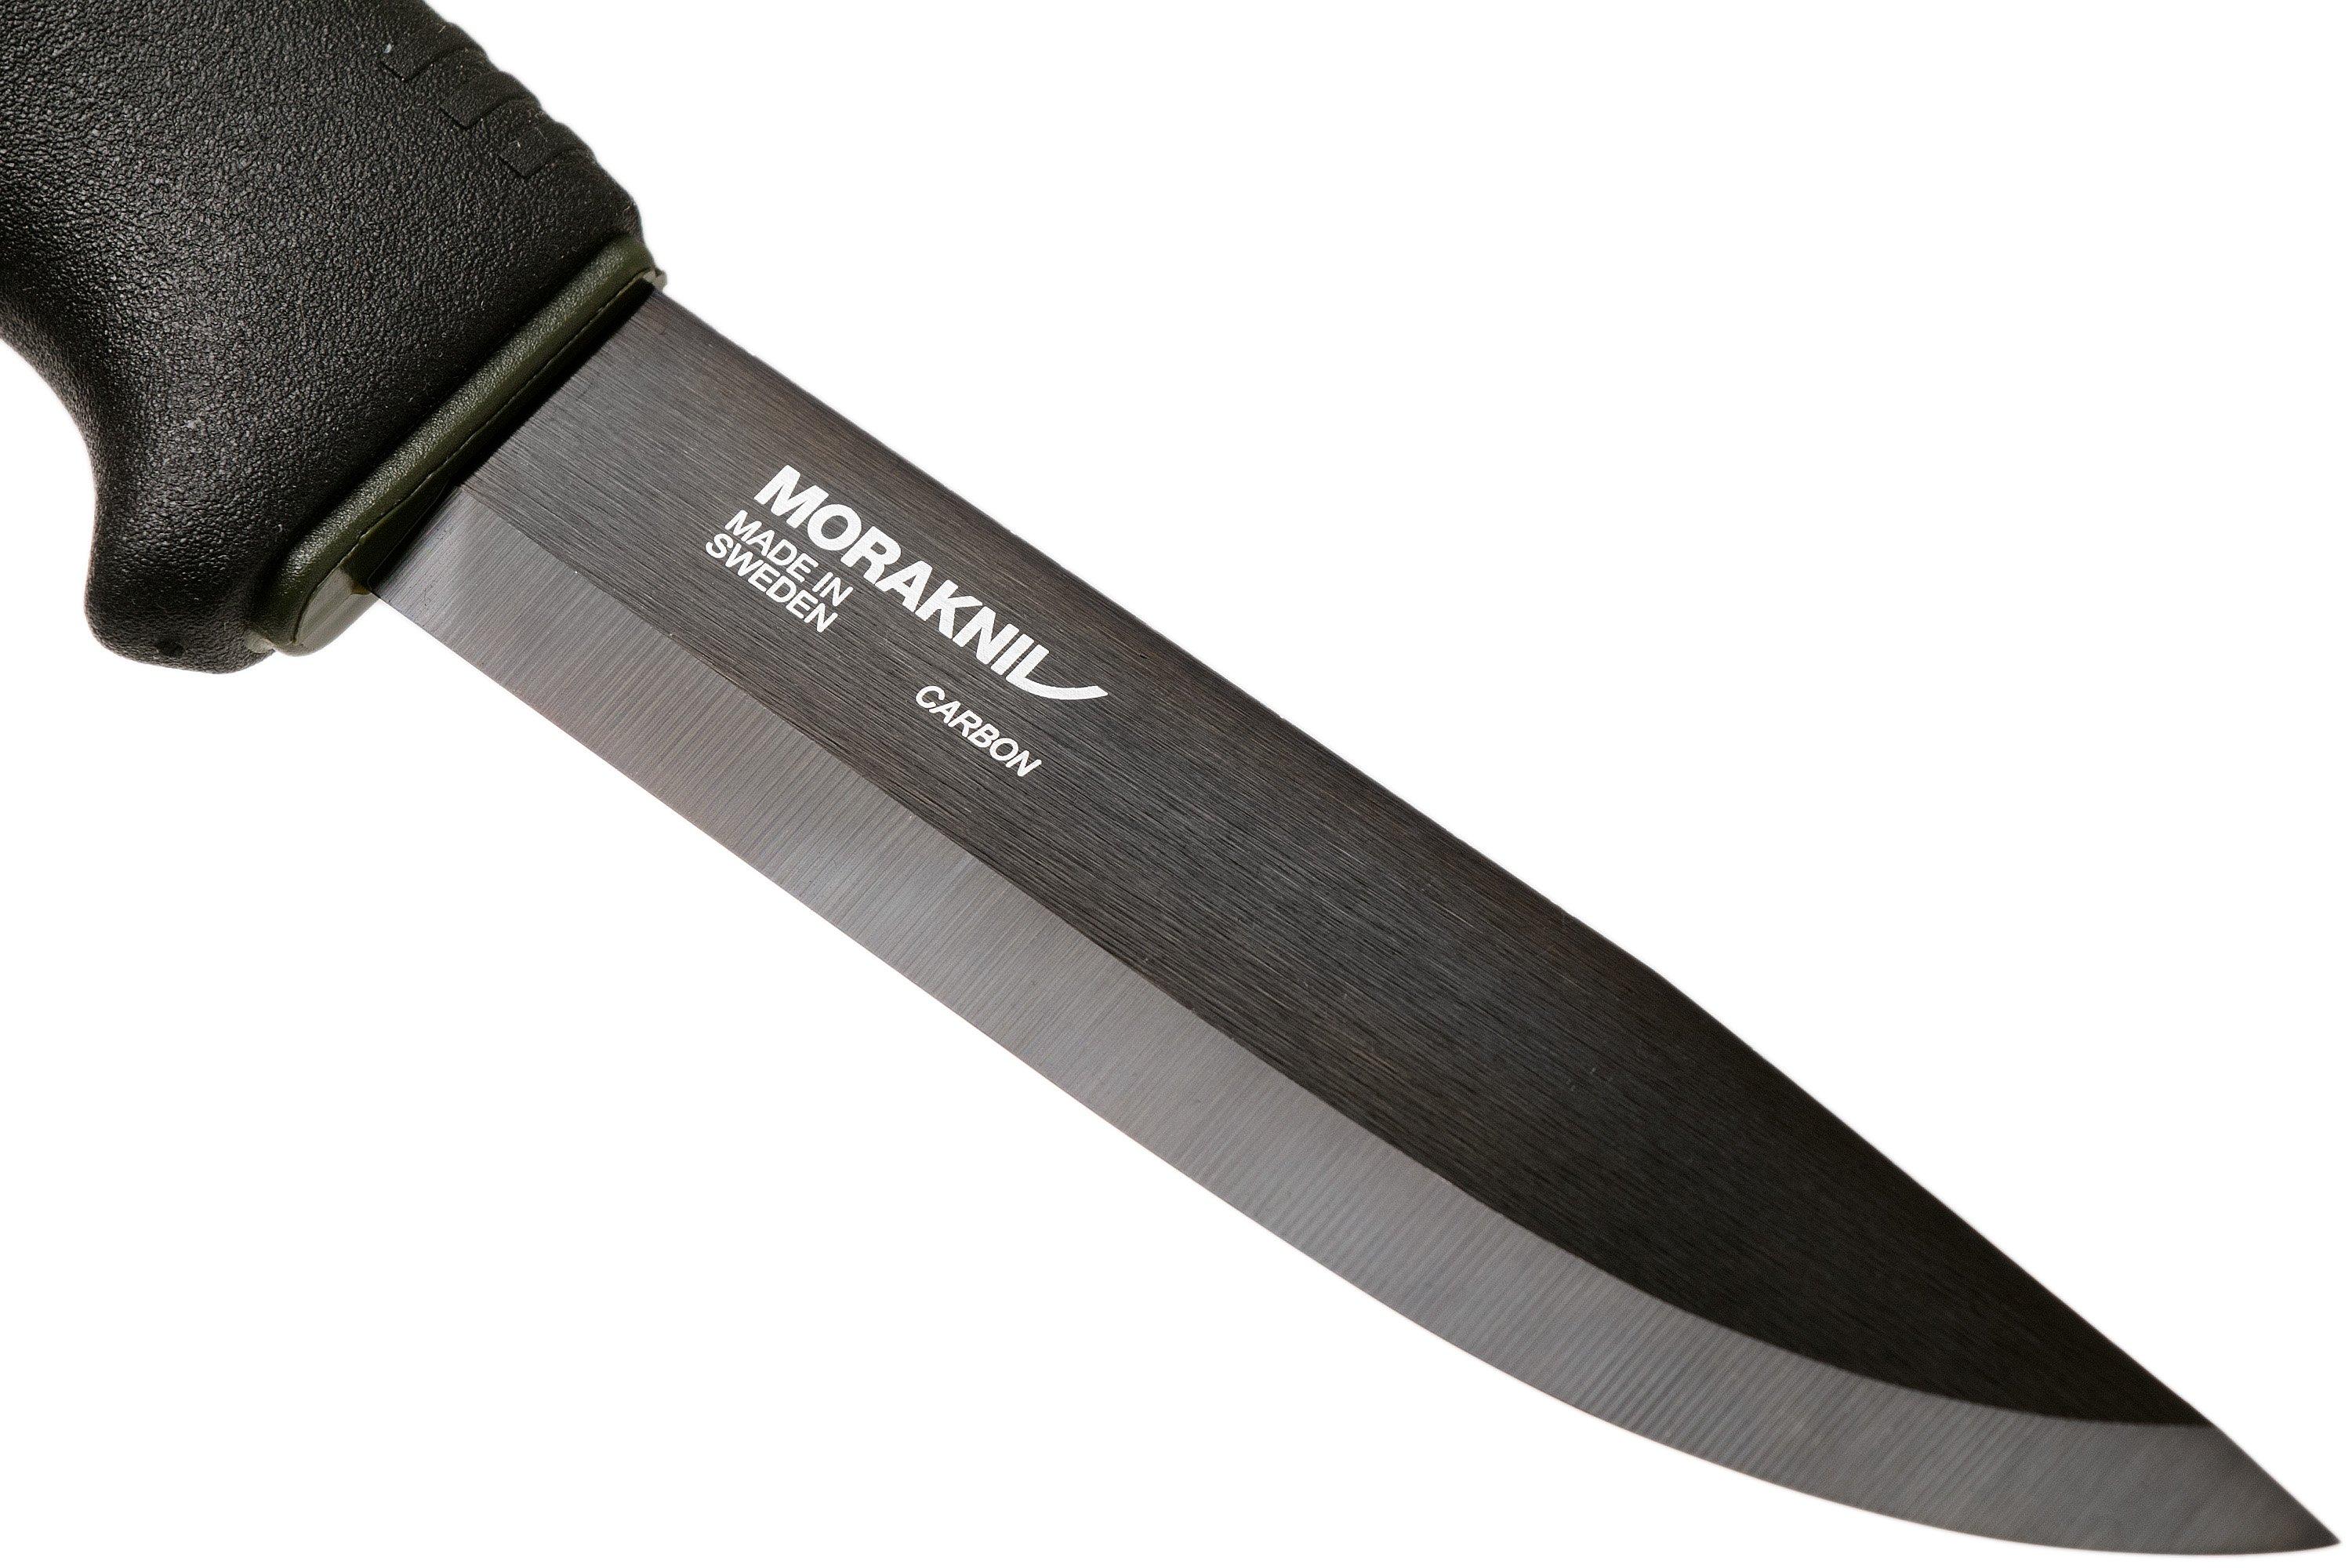 Morakniv Mora of Sweden Bushcraft Black Survival Knife 4.125 Black Carbon  Steel Blade, Fire Starter and Sheath, Black Rubberized Handle - KnifeCenter  - M-11742